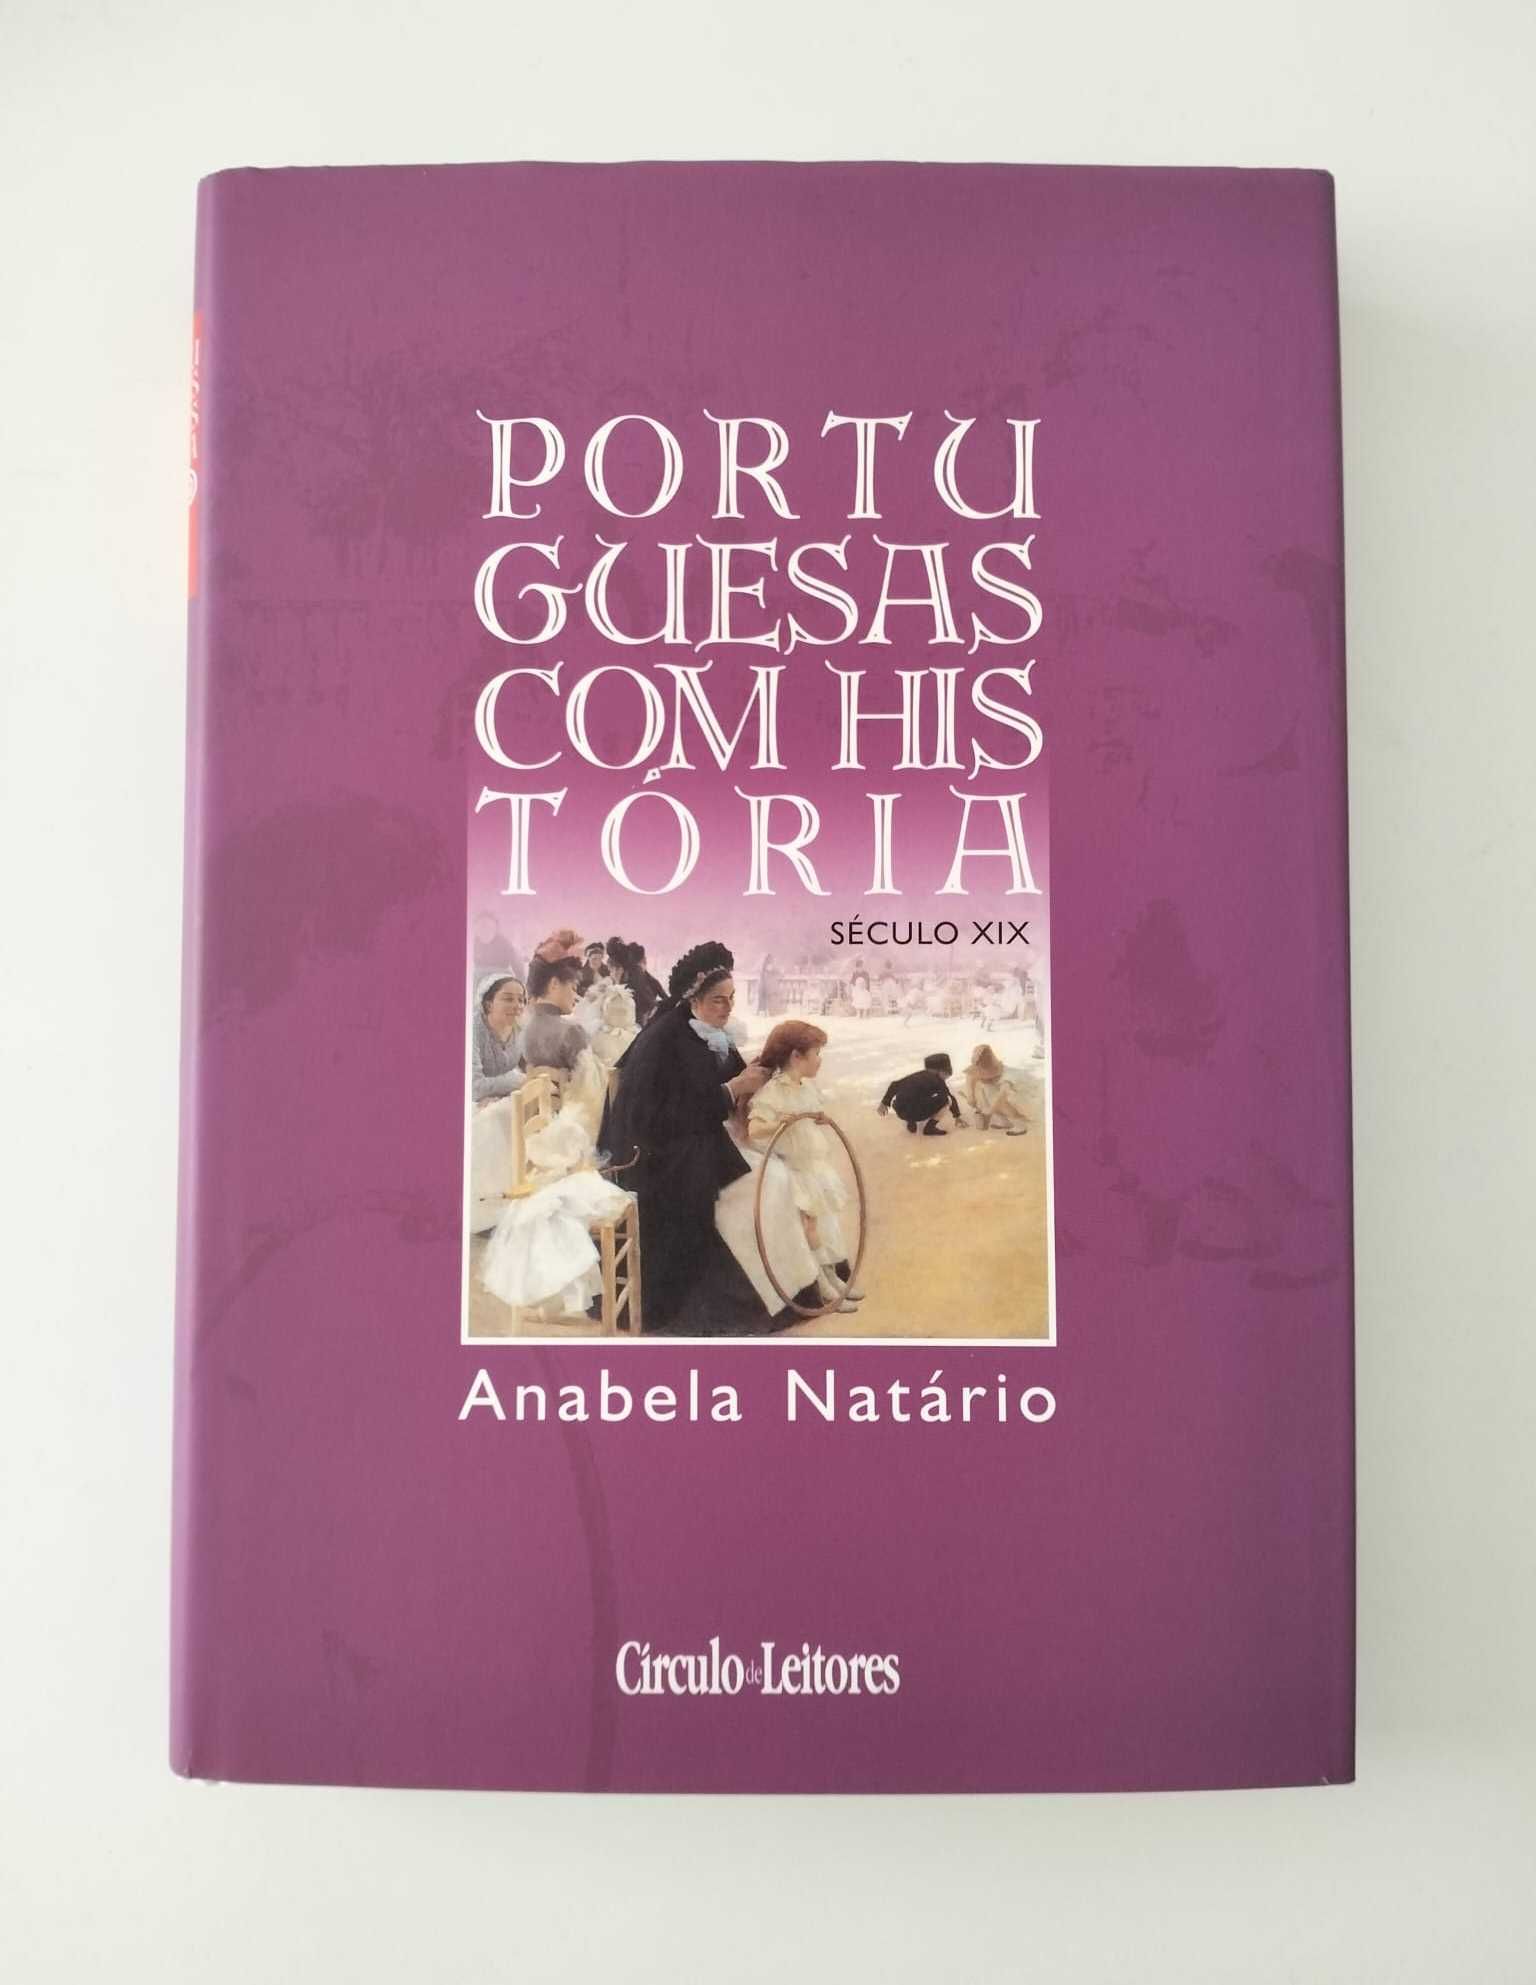 Livro "Portuguesas Com História XIX" - Anabela Natário